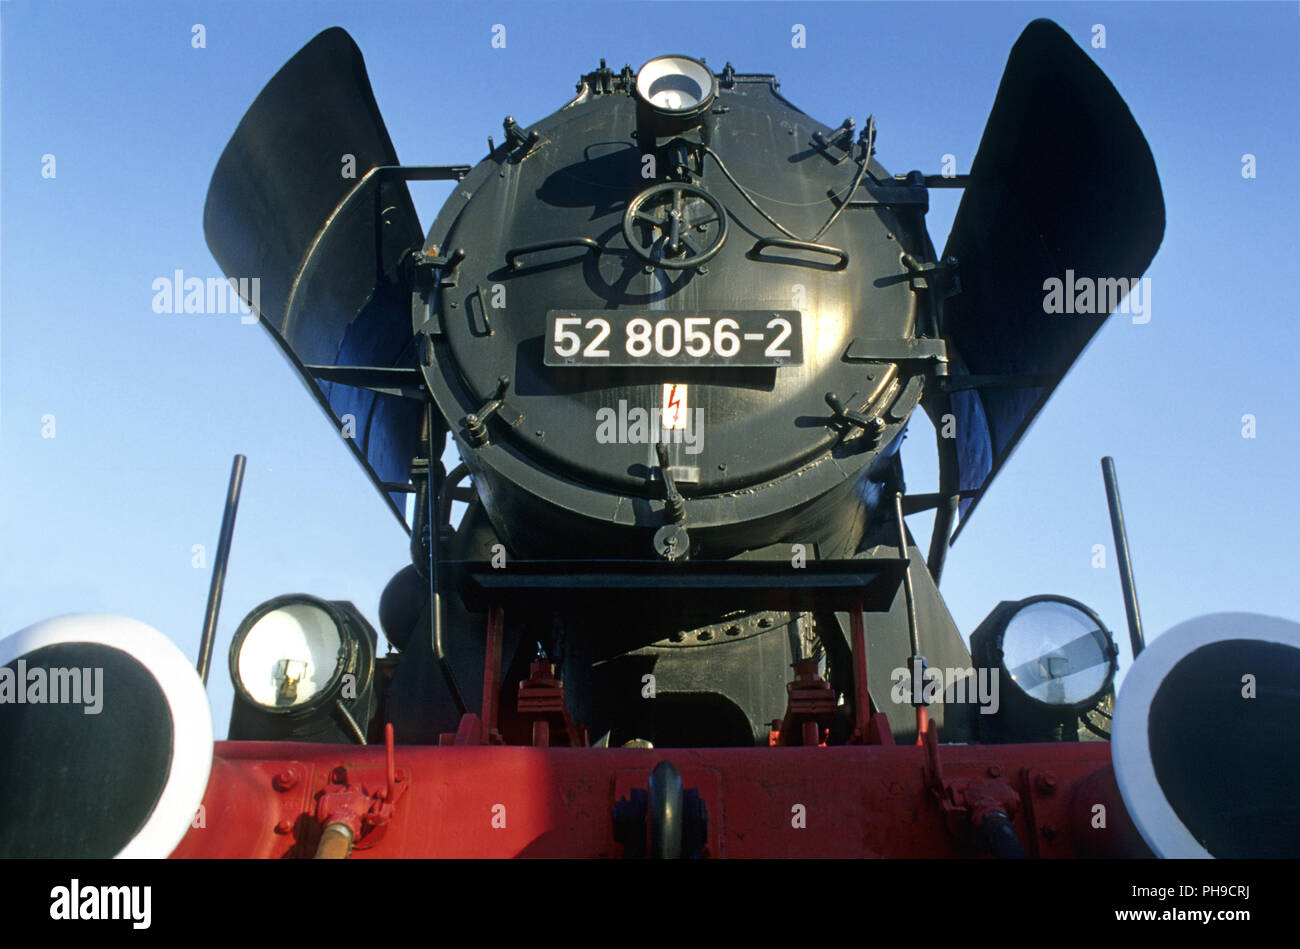 Locomotora de vapor clásica, frontal Foto de stock